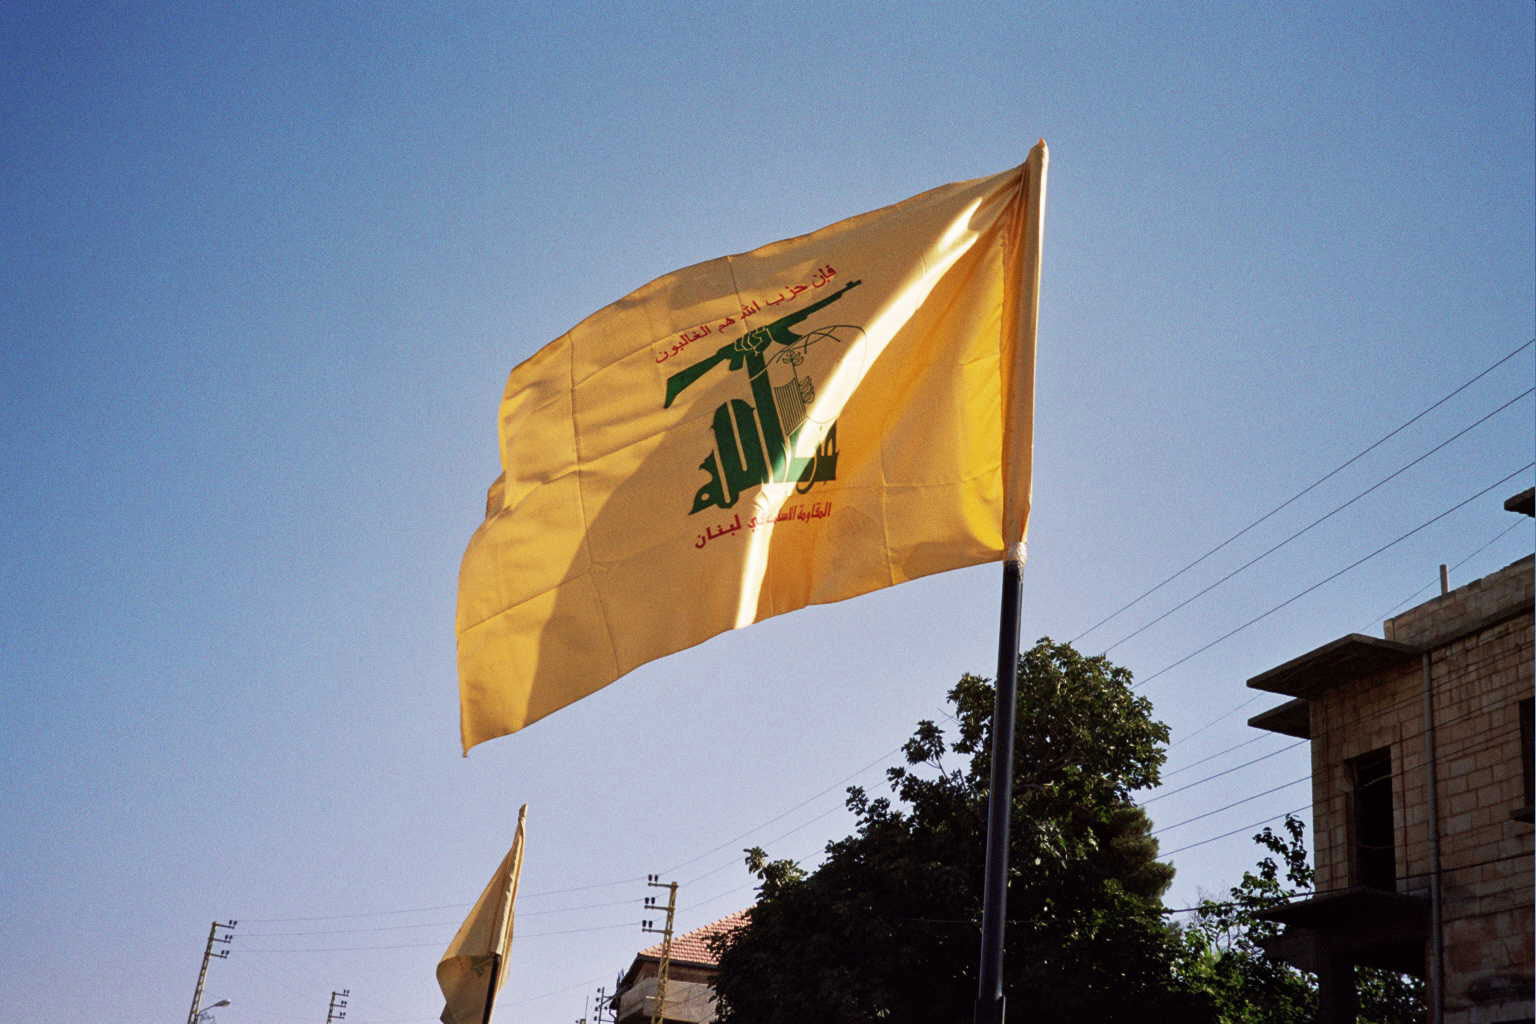 Hizbollah on ollut mukana Libanonin hallituksessa vuodesta 2005 lähtien ja se on tukenut Bašar al-Assadin hallintoa Syyriassa. Hizbollahin lipussa on kuvattuna Kalashnikov-konepistooli. 